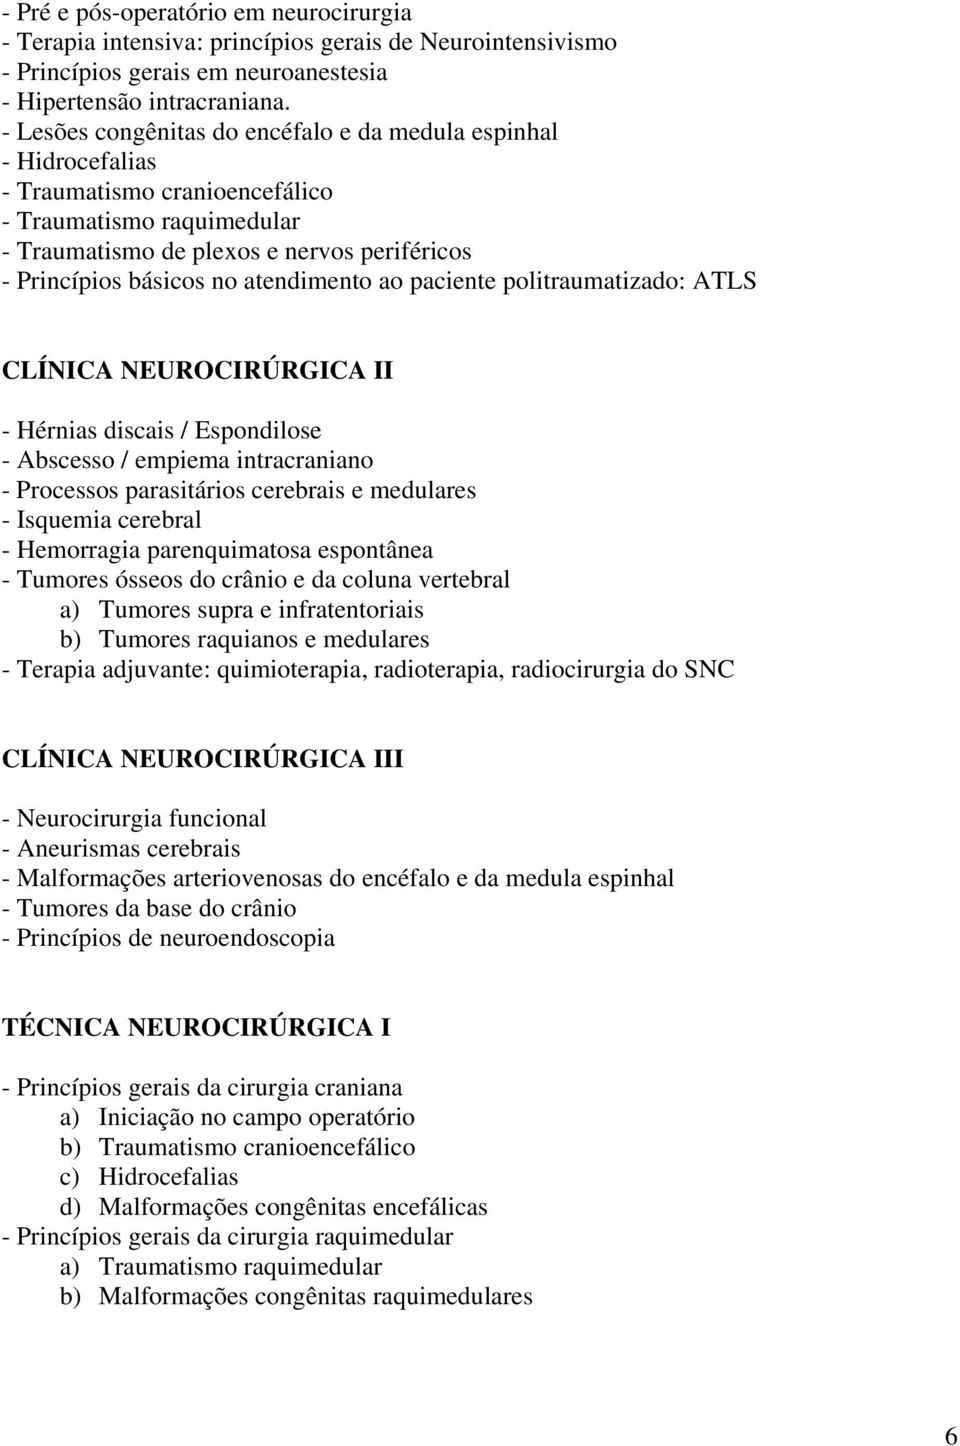 atendimento ao paciente politraumatizado: ATLS CLÍNICA NEUROCIRÚRGICA II - Hérnias discais / Espondilose - Abscesso / empiema intracraniano - Processos parasitários cerebrais e medulares - Isquemia